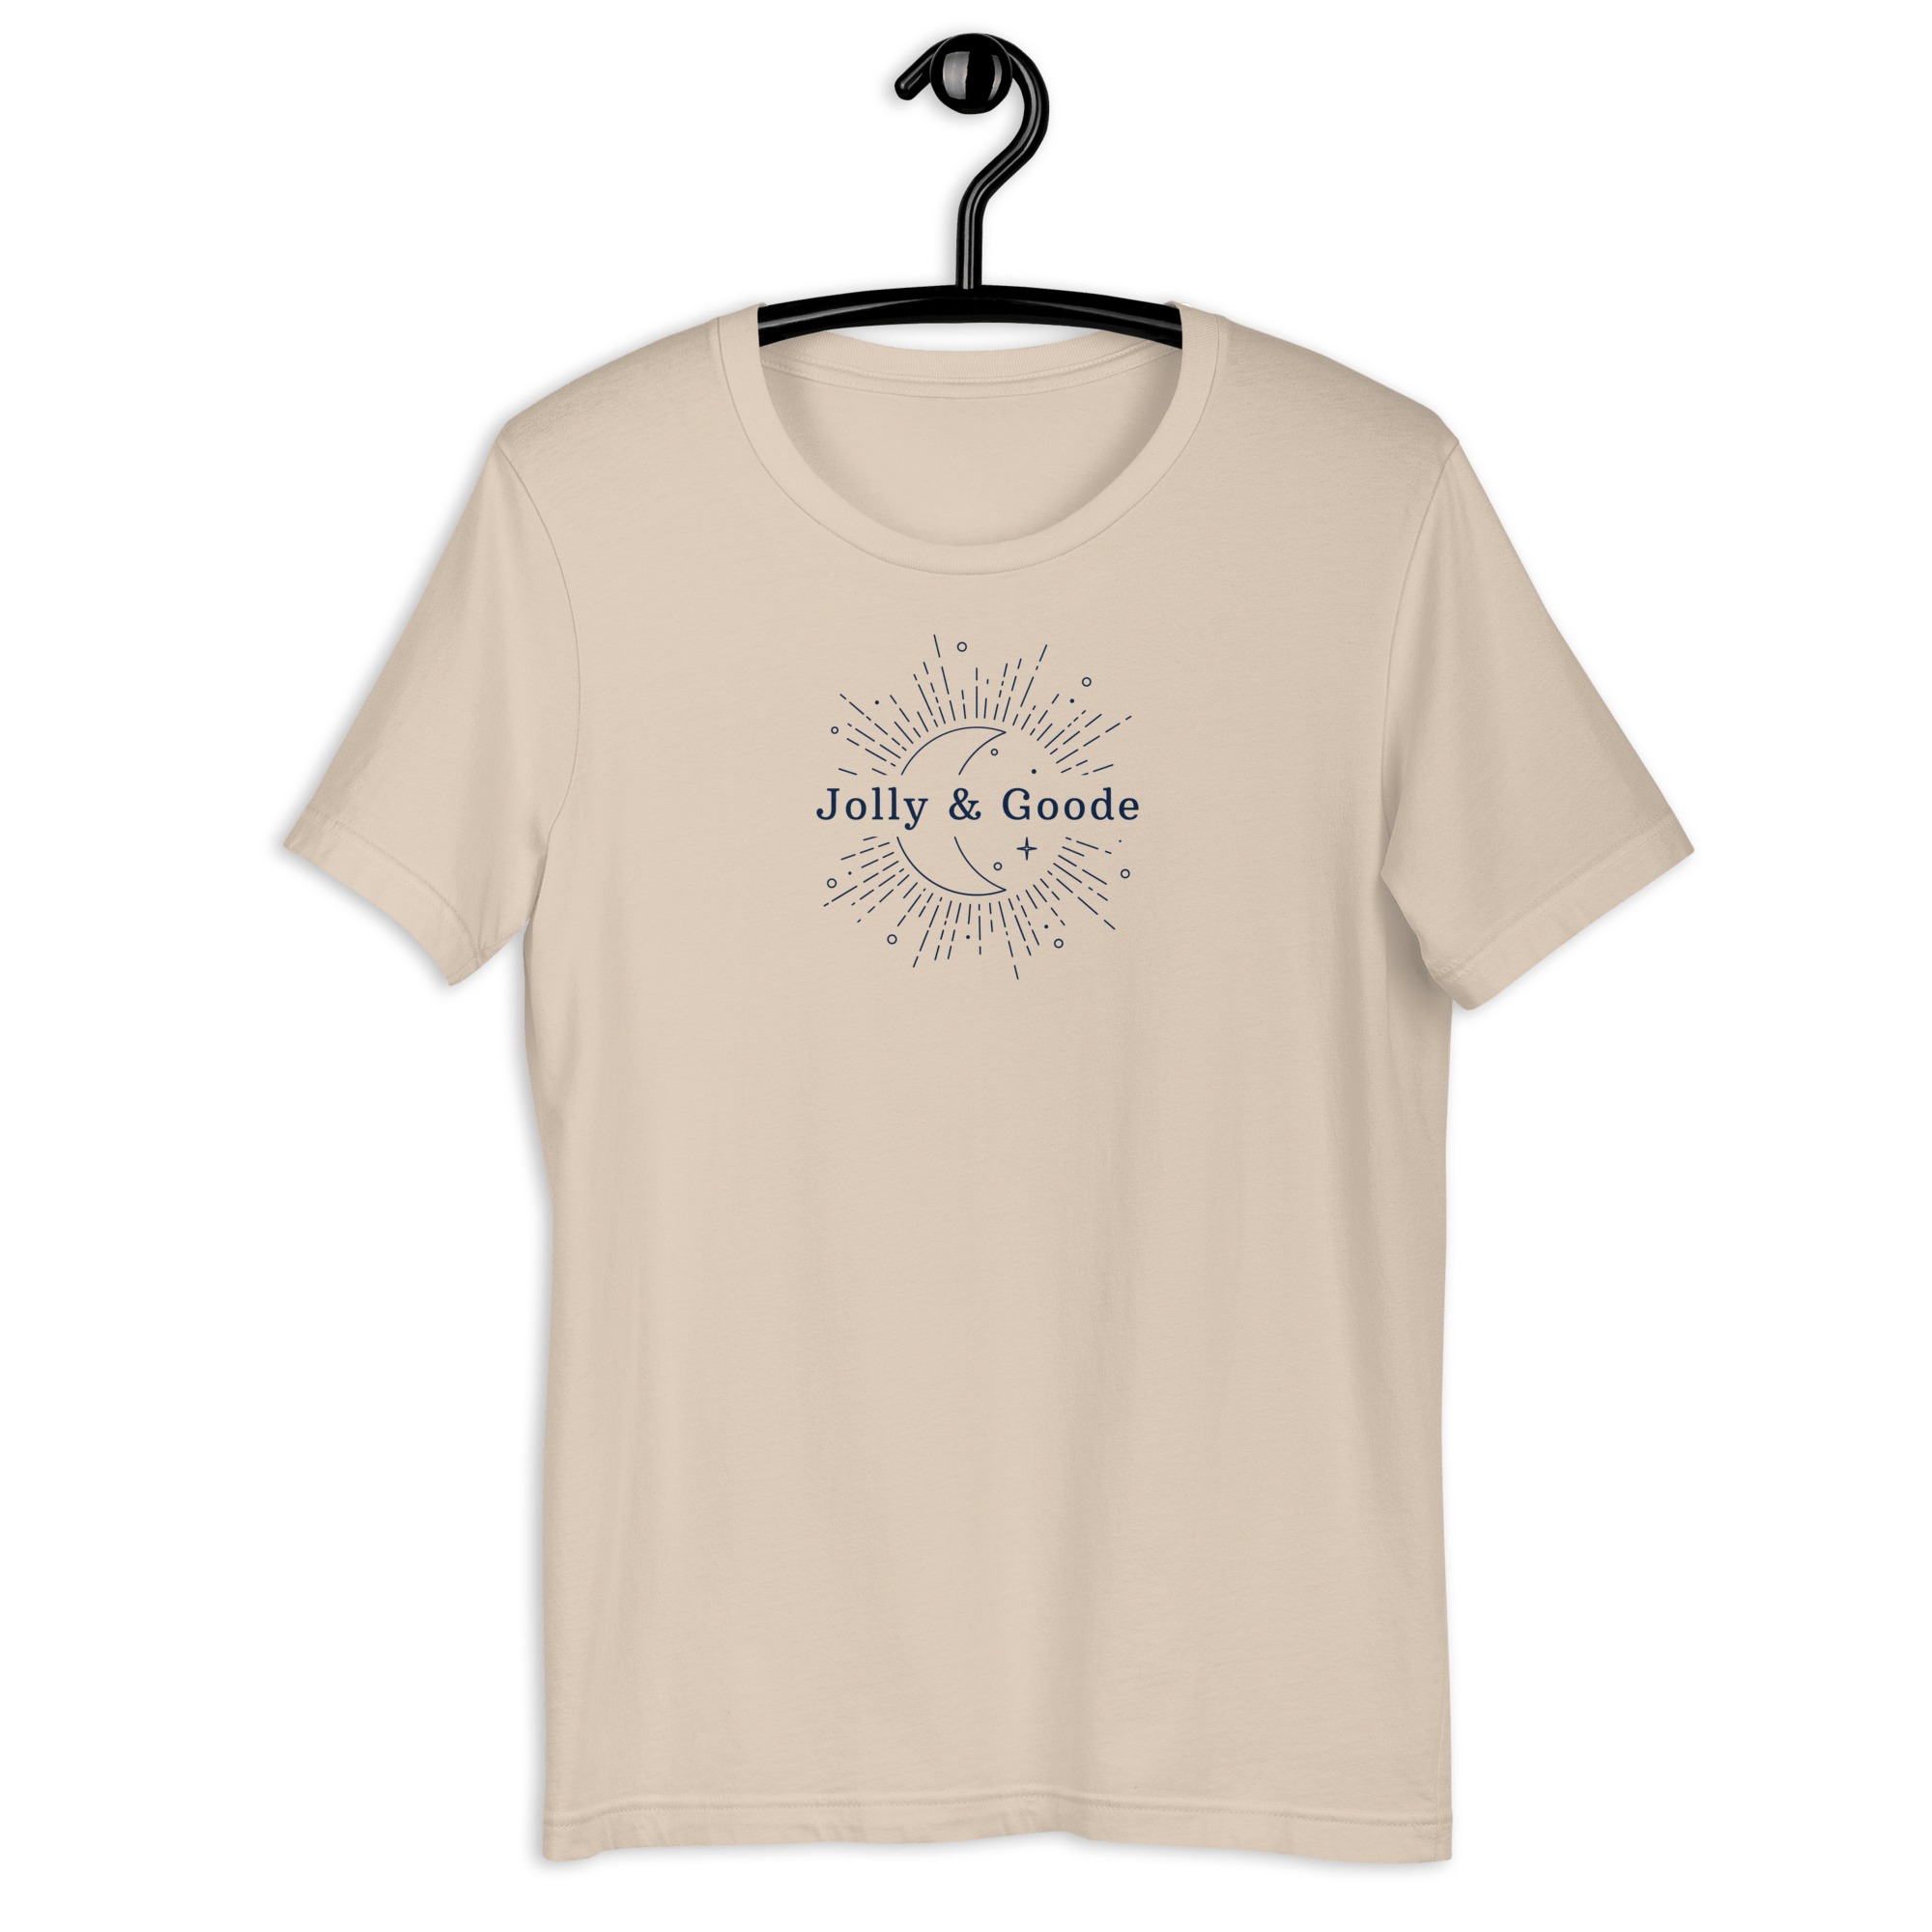 Jolly & Goode Eclipse T-Shirt Soft Cream / XS Shirts & Tops Jolly & Goode